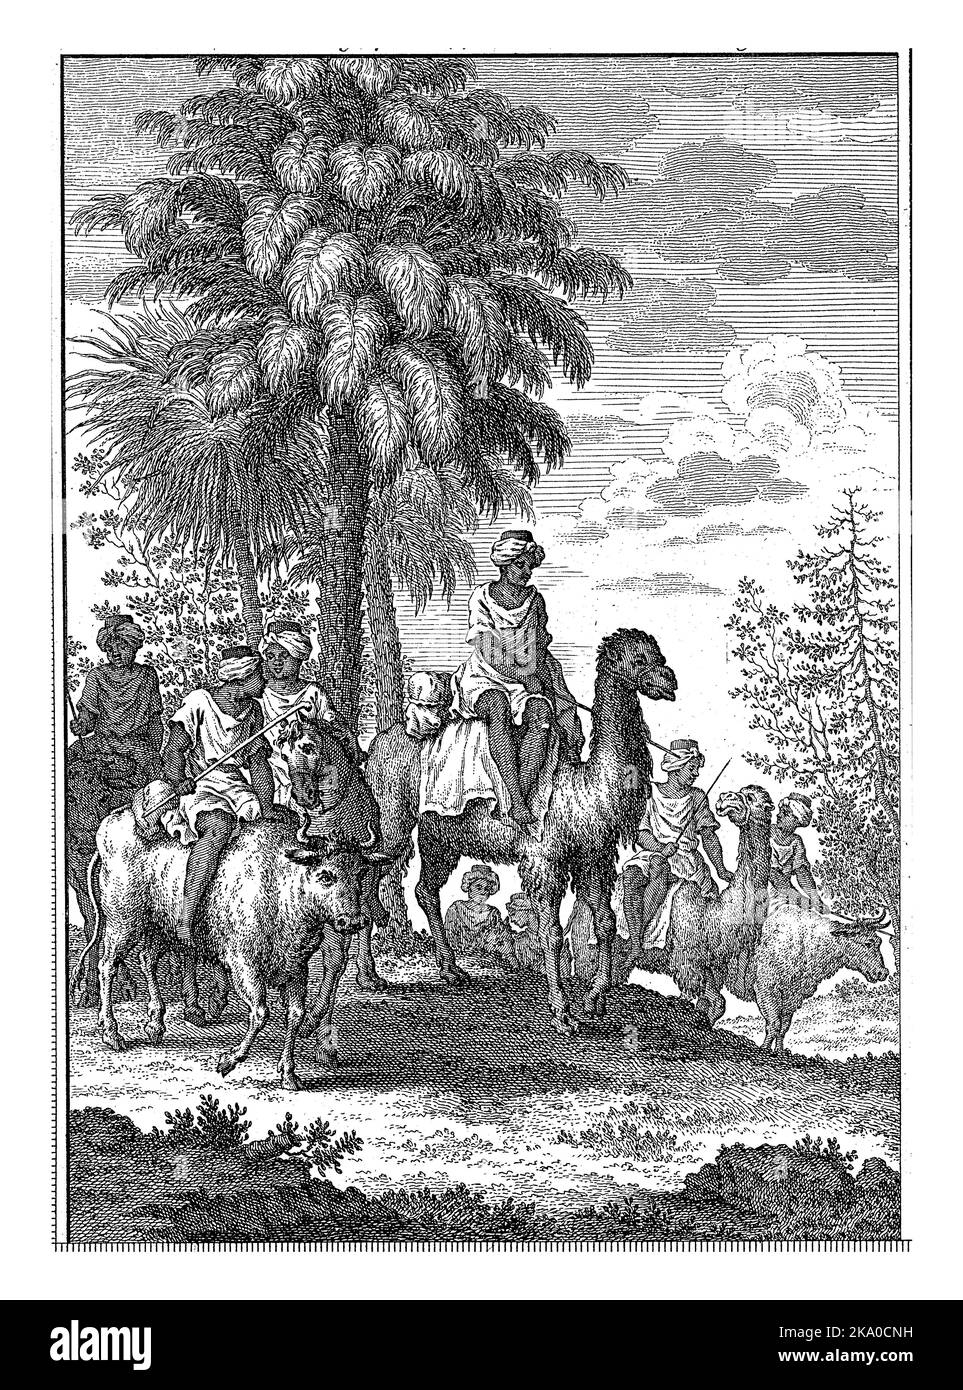 Gli uomini con i turbani sulla testa portano gomma in borse di pelle in Senegal. Essi attraversano un paesaggio con palme, cammelli, buoi e cavalli. Foto Stock